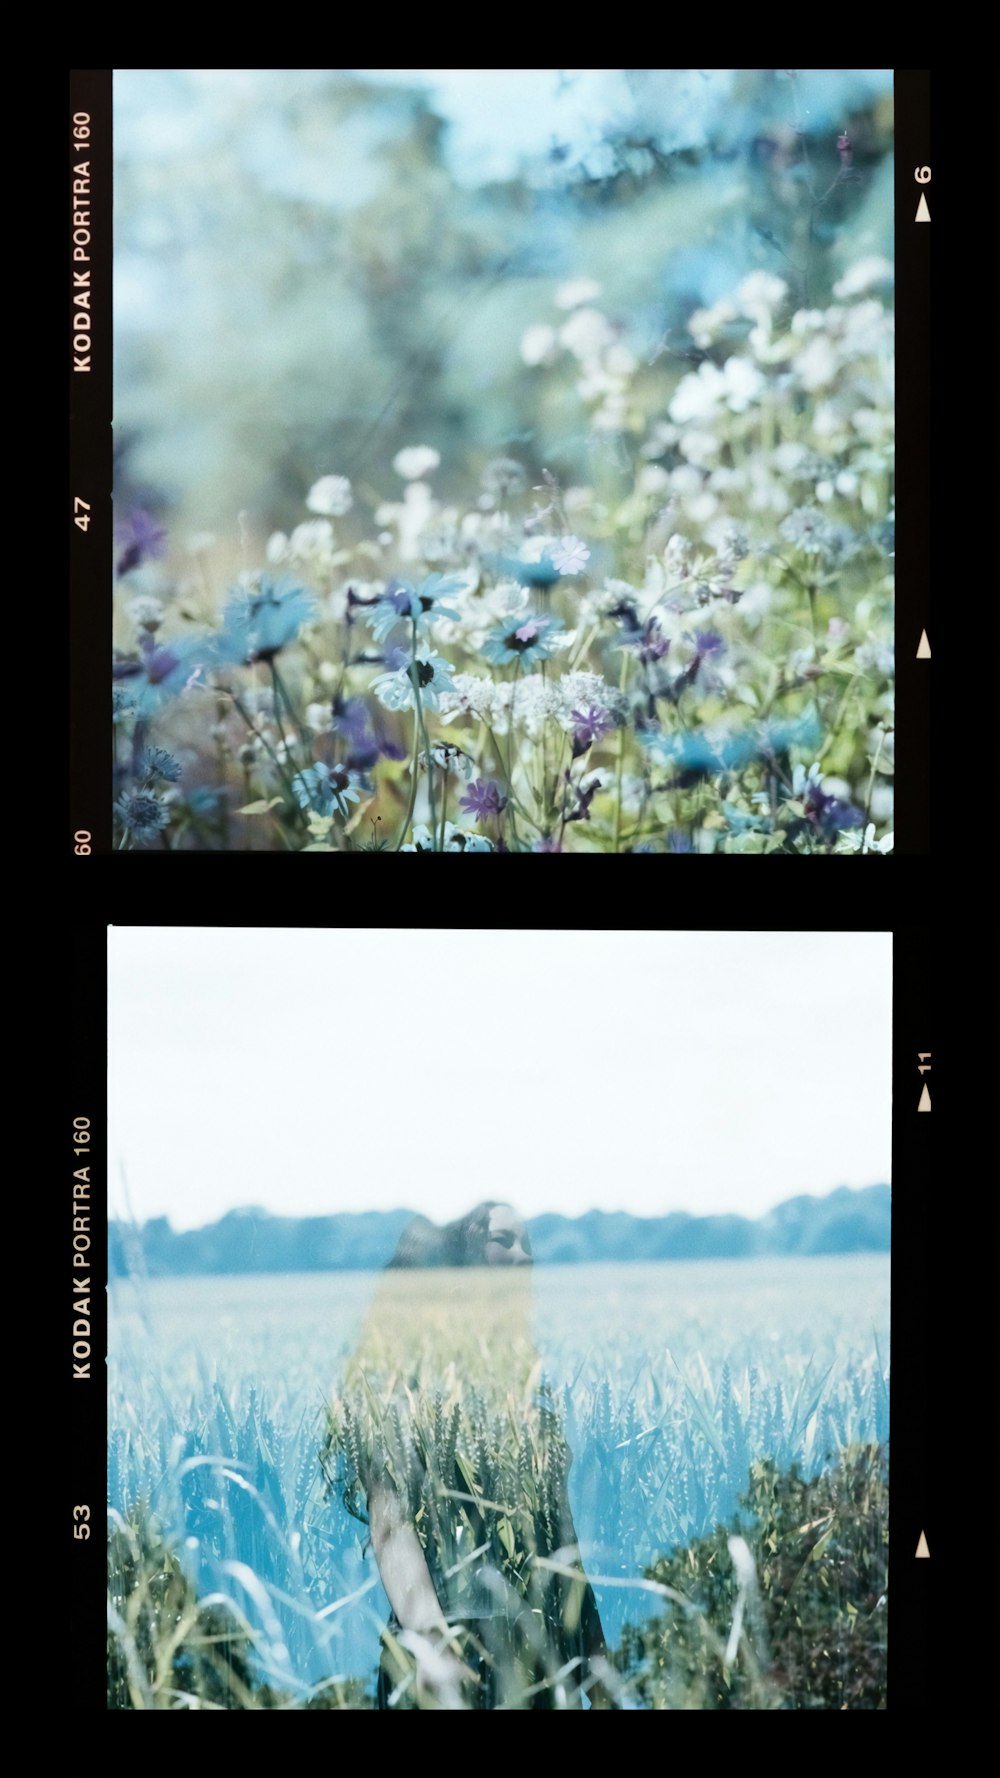 blue flowers near green grass field during daytime